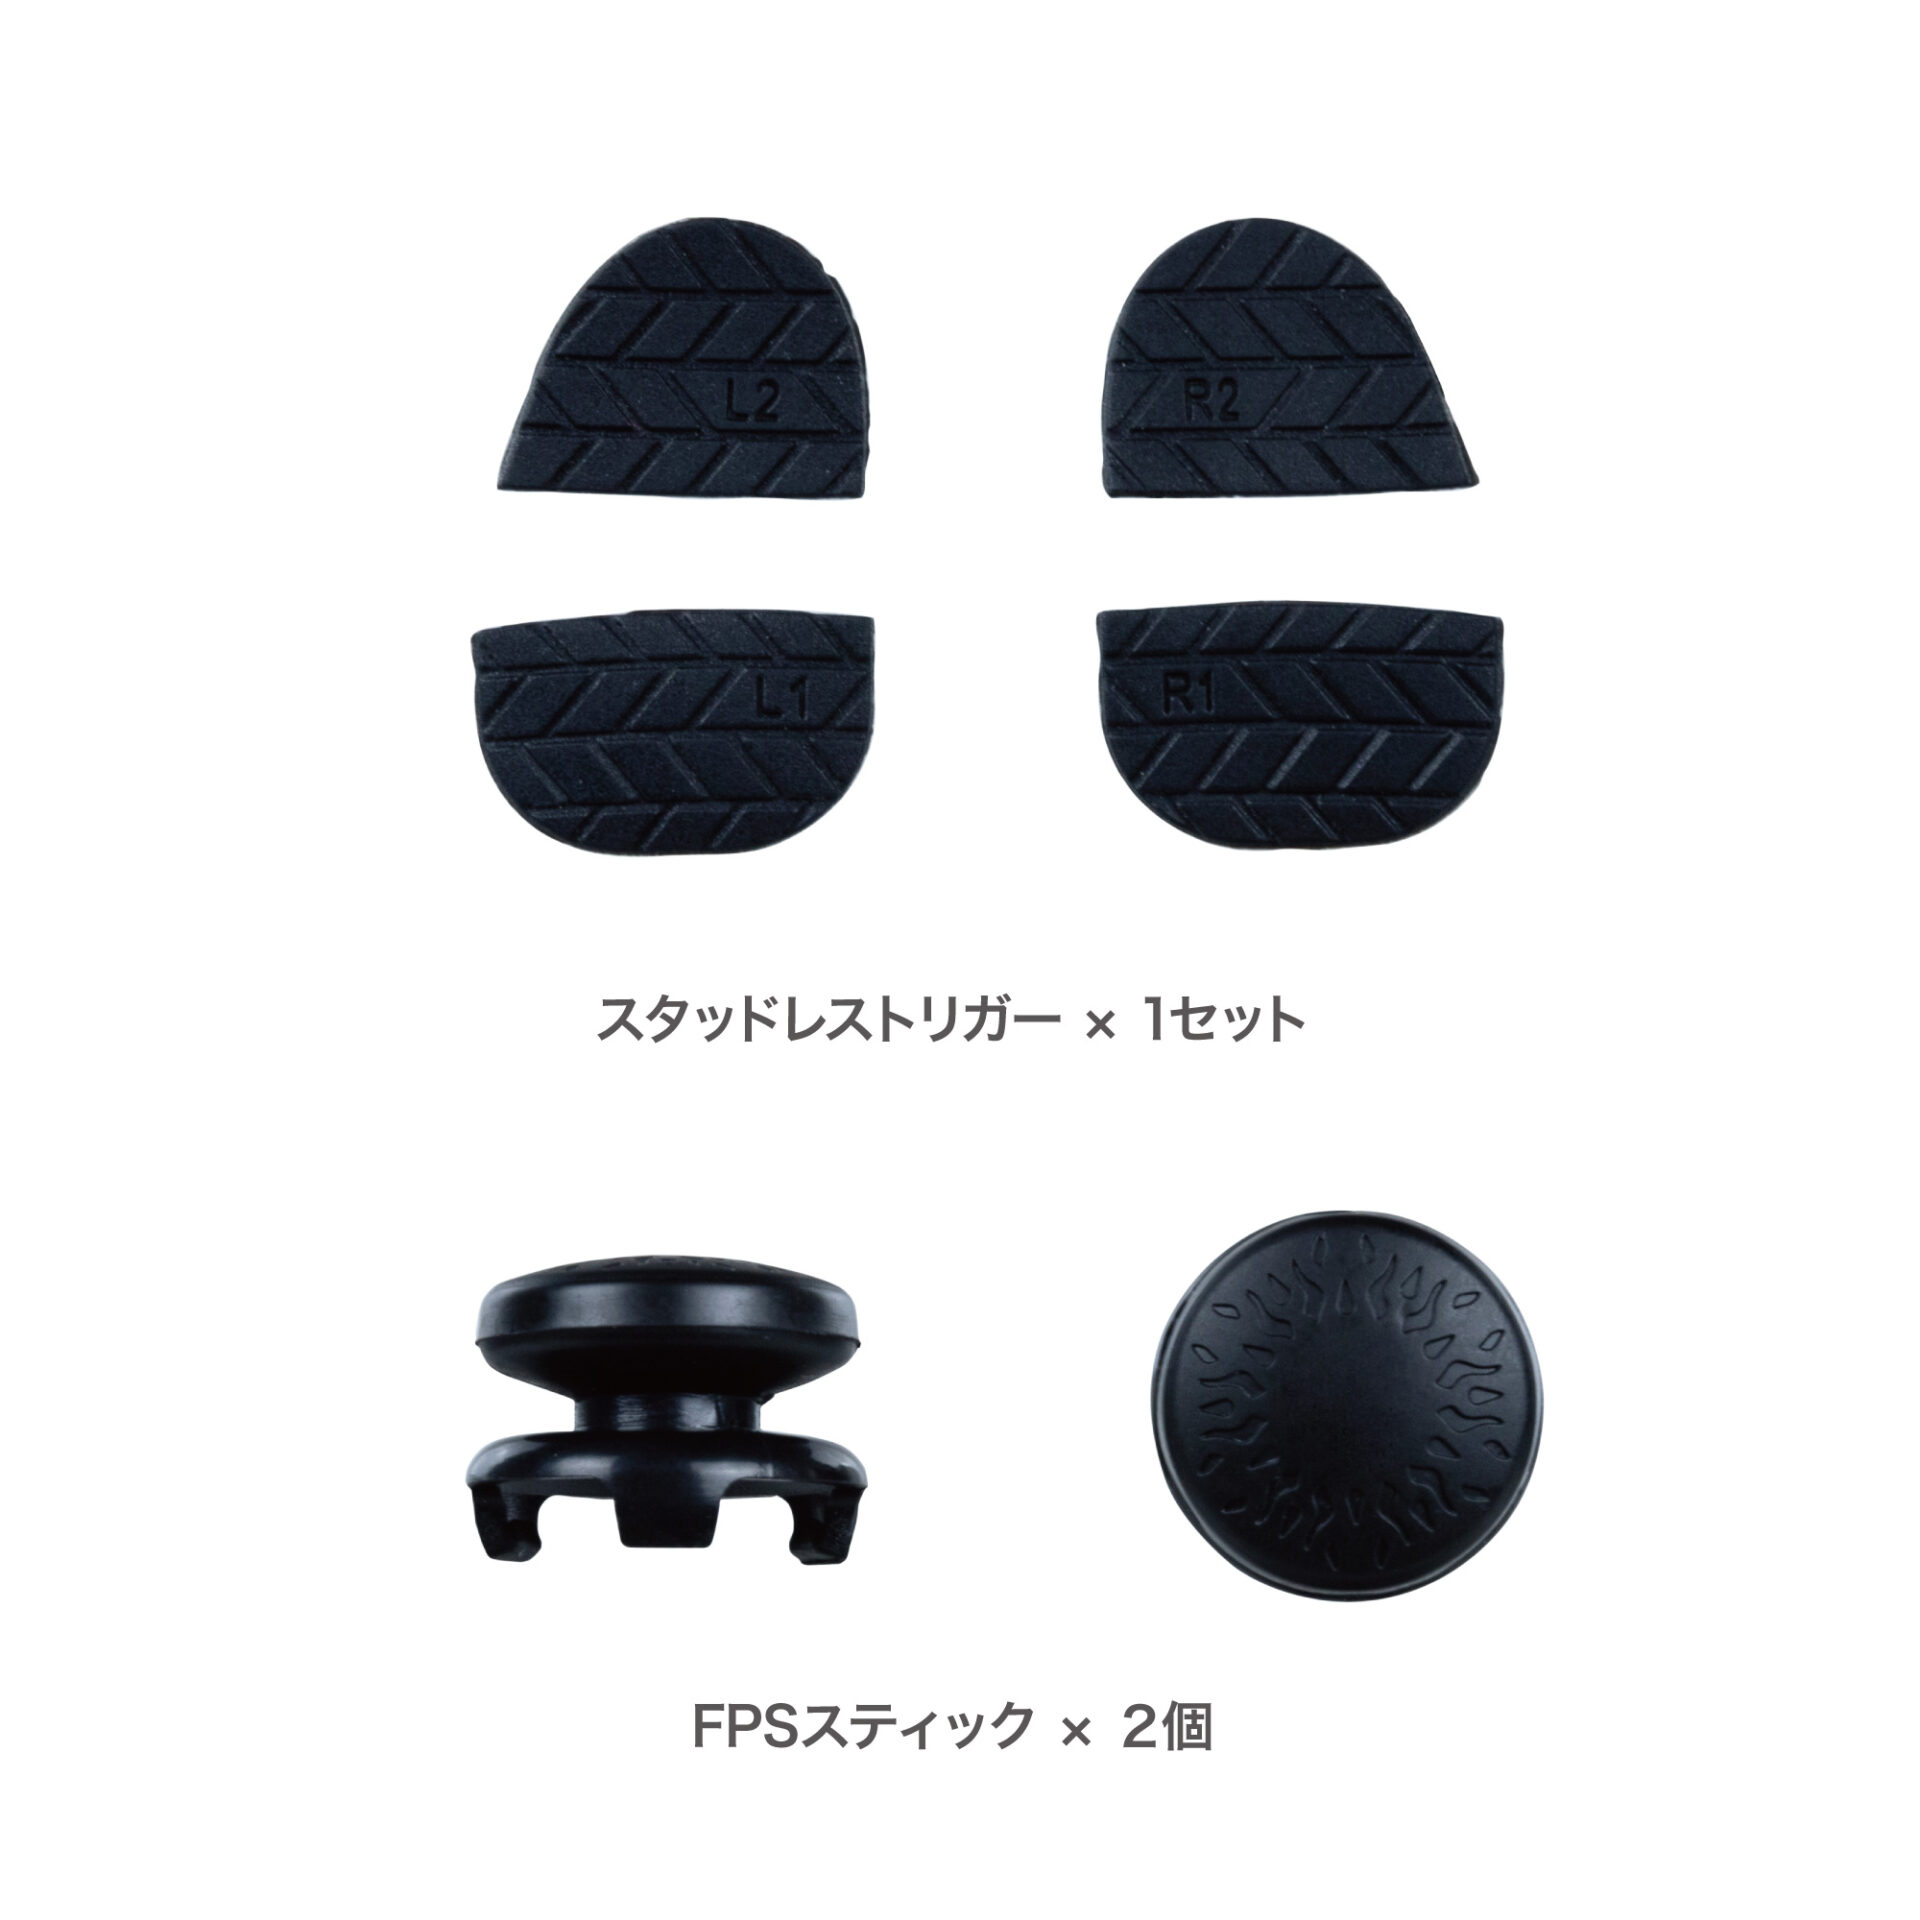 PS5コントローラ用 スタッドレストリガーPlus